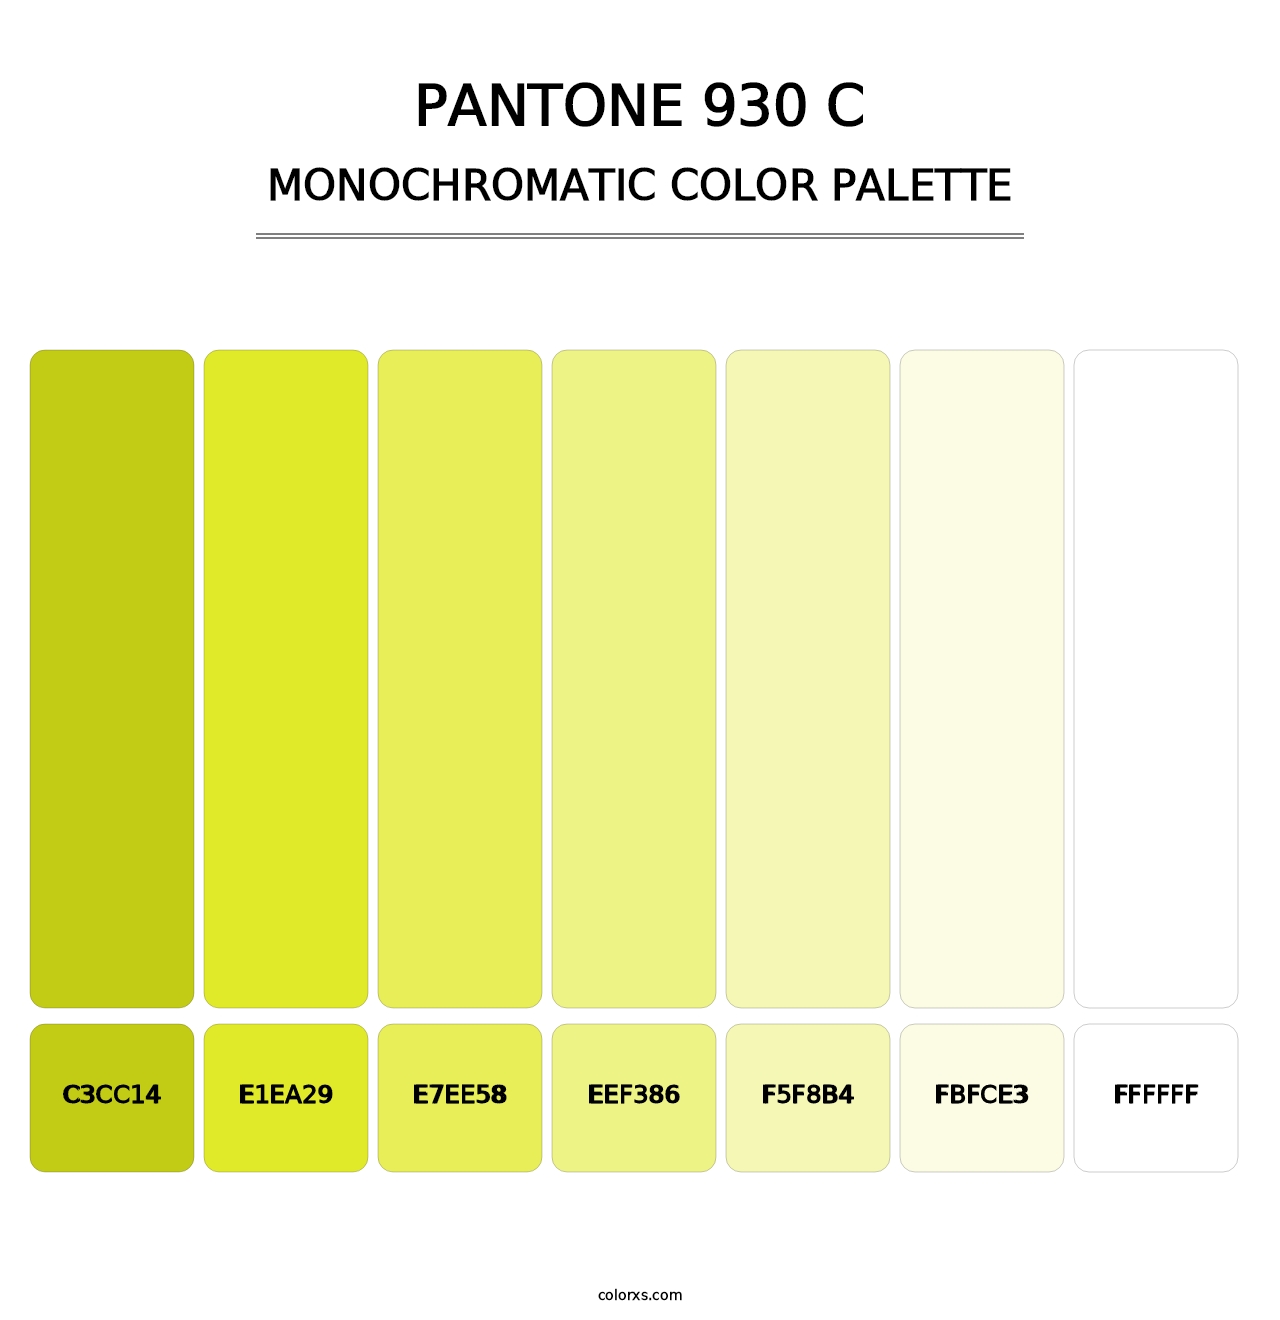 PANTONE 930 C - Monochromatic Color Palette